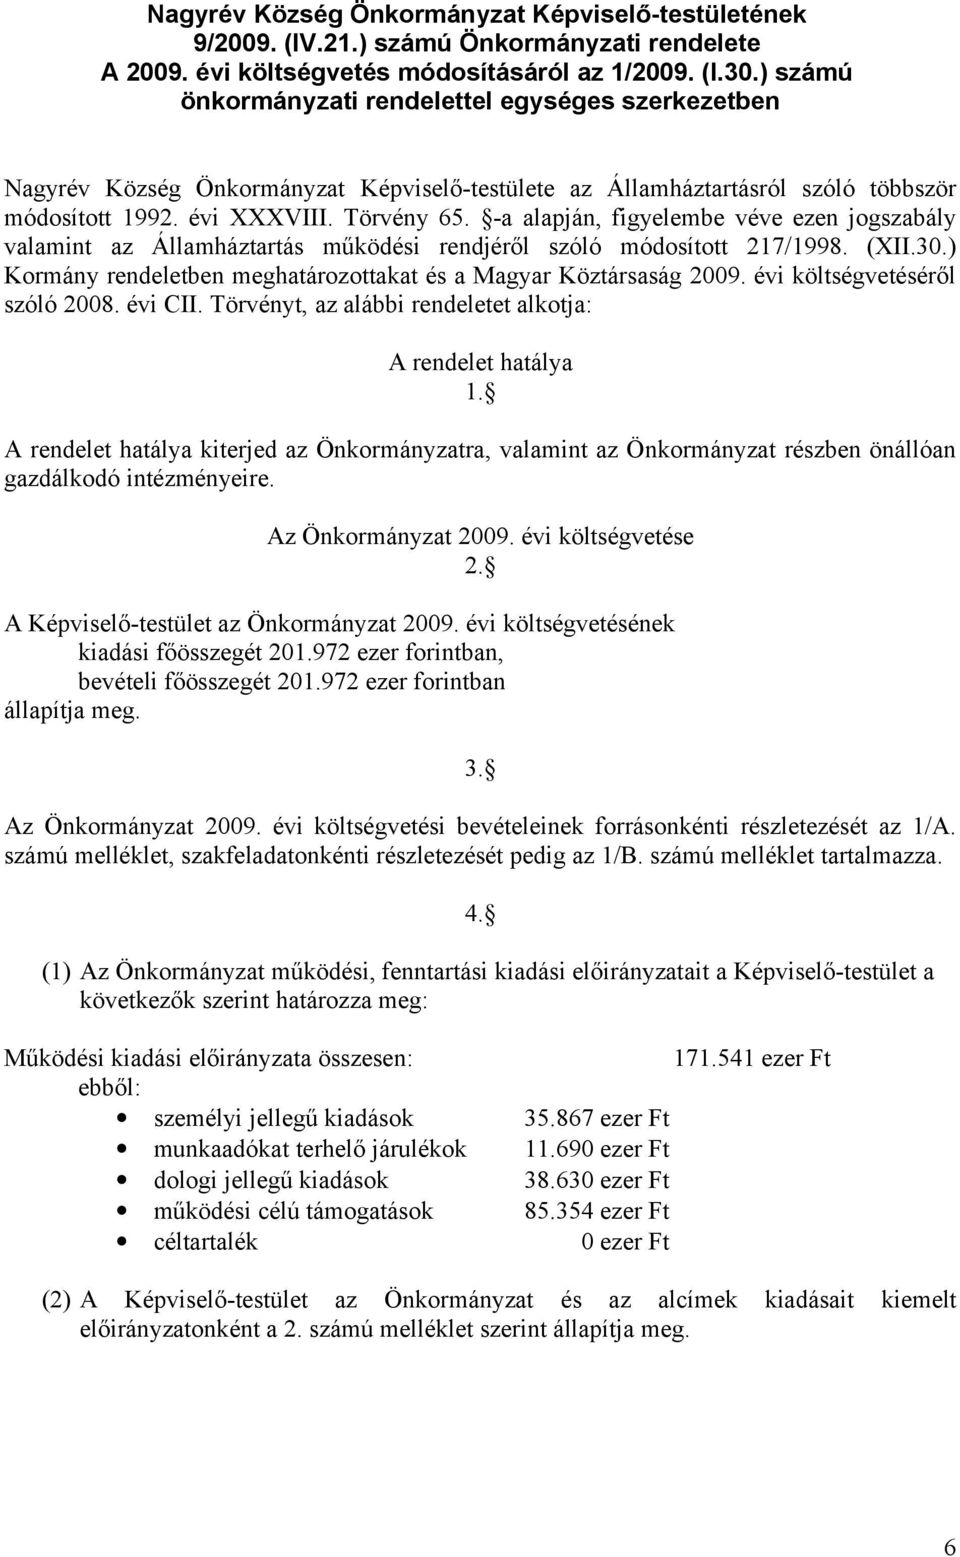 -a alapján, figyelembe véve ezen jogszabály valamint az Államháztartás működési rendjéről szóló módosított 217/1998. (XII.30.) Kormány rendeletben meghatározottakat és a Magyar Köztársaság 2009.